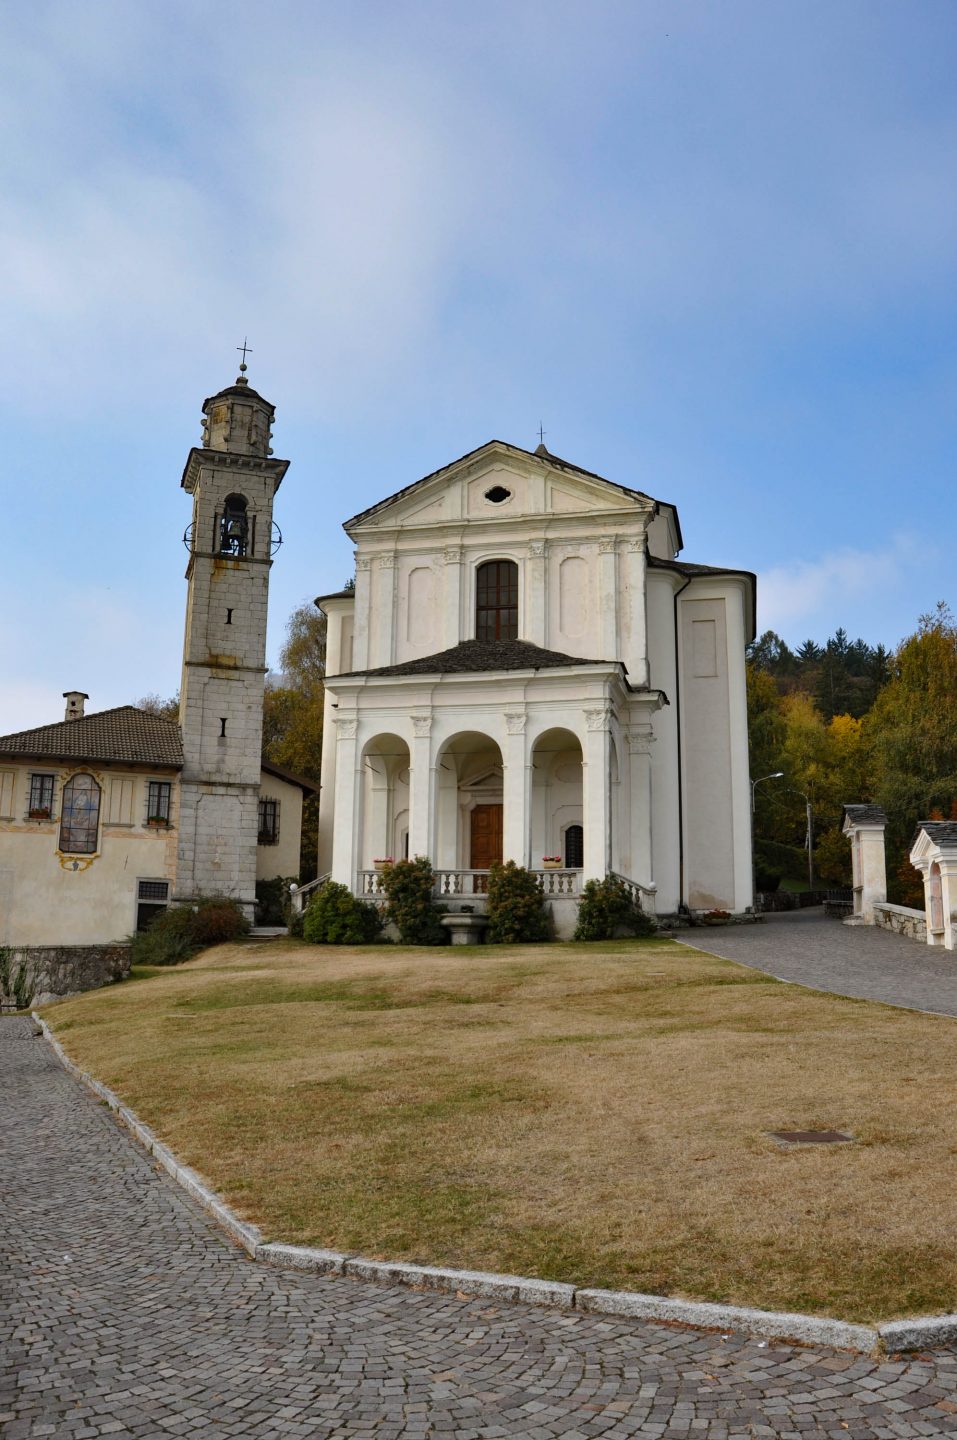 Madonna del Sasso - Orta San Giulio - Lago d'Orta - Orta S. Giulio - Istanti in viaggio